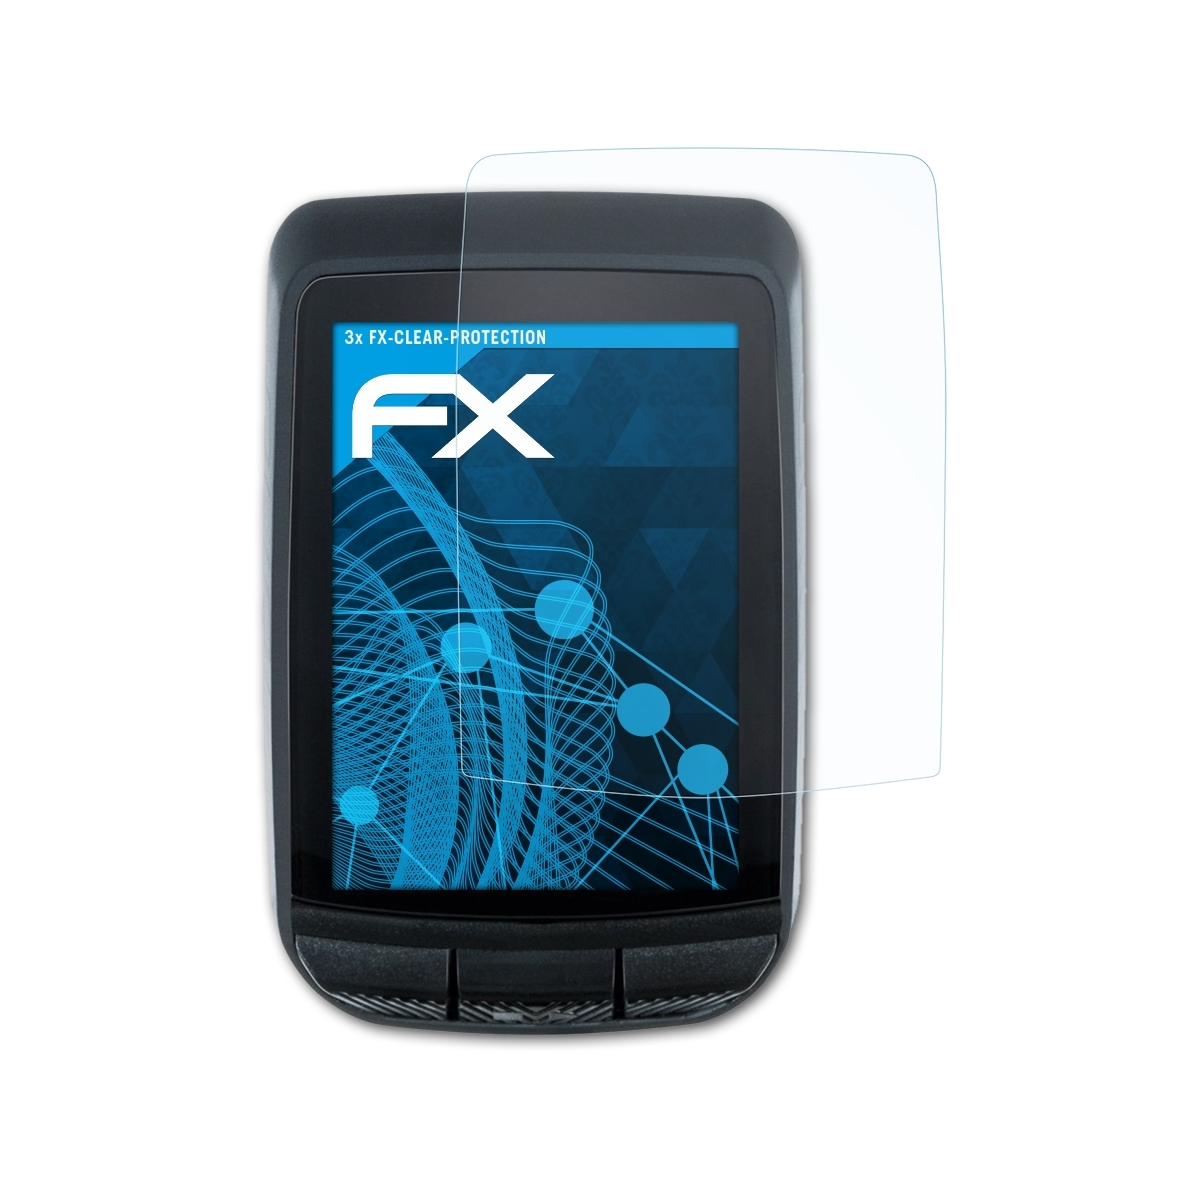 ATFOLIX GPS) Pure 3x FX-Clear Displayschutz(für Sigma